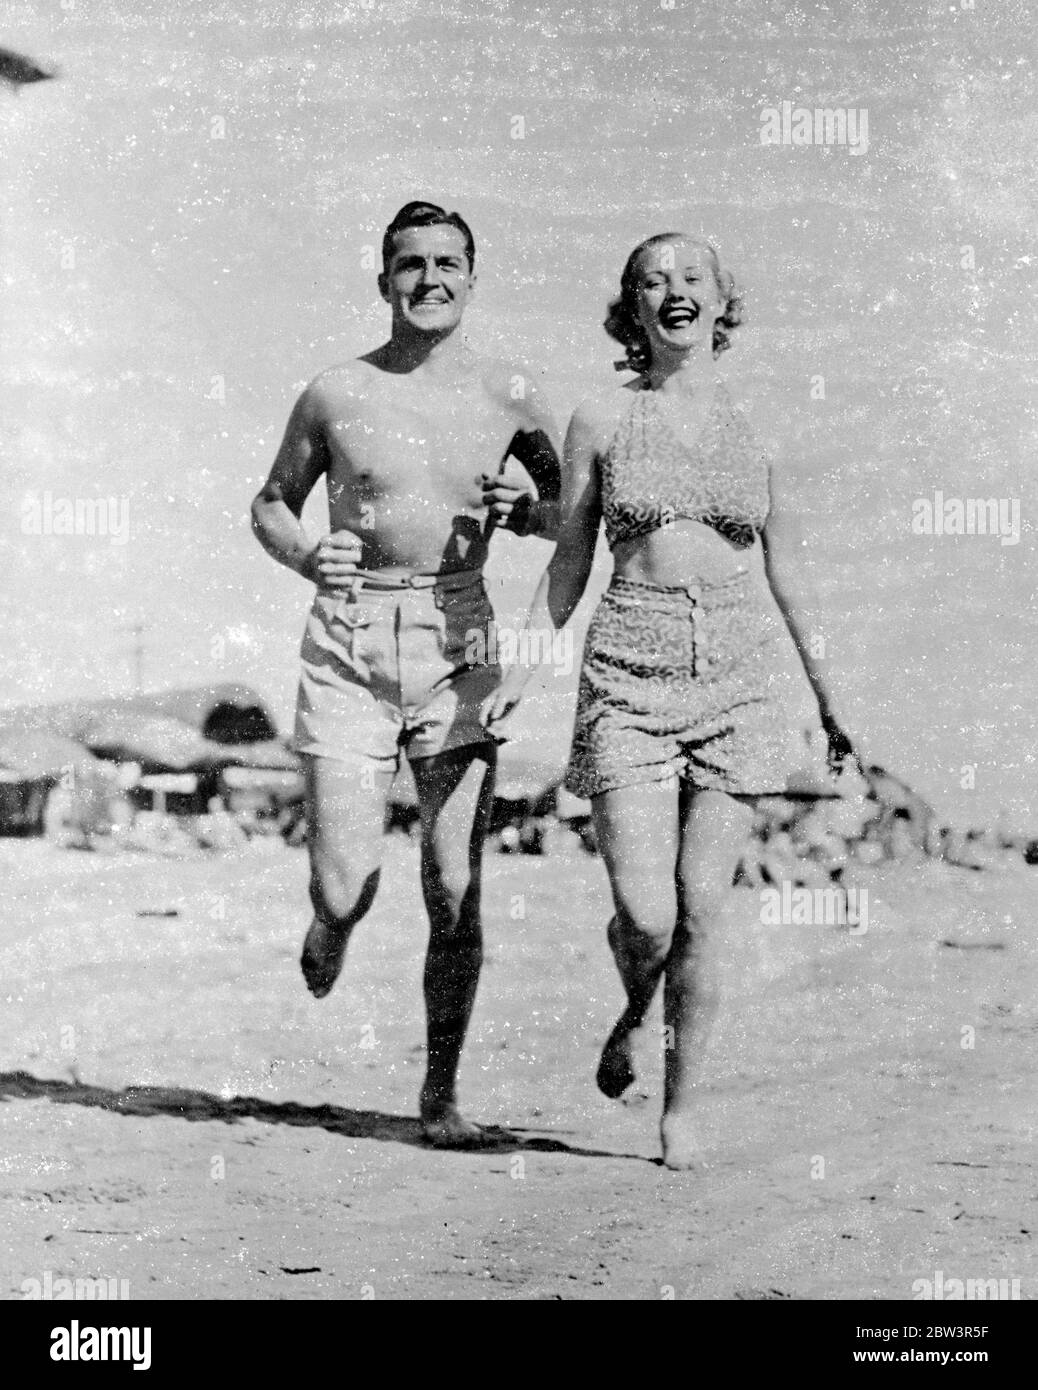 Toben am Strand. Kent Taylor und Phyllis Brooks, die Hollywood-Filmspieler, machen einen Run am Strand von Santa Monica, Kalifornien. Mai 1936 Stockfoto